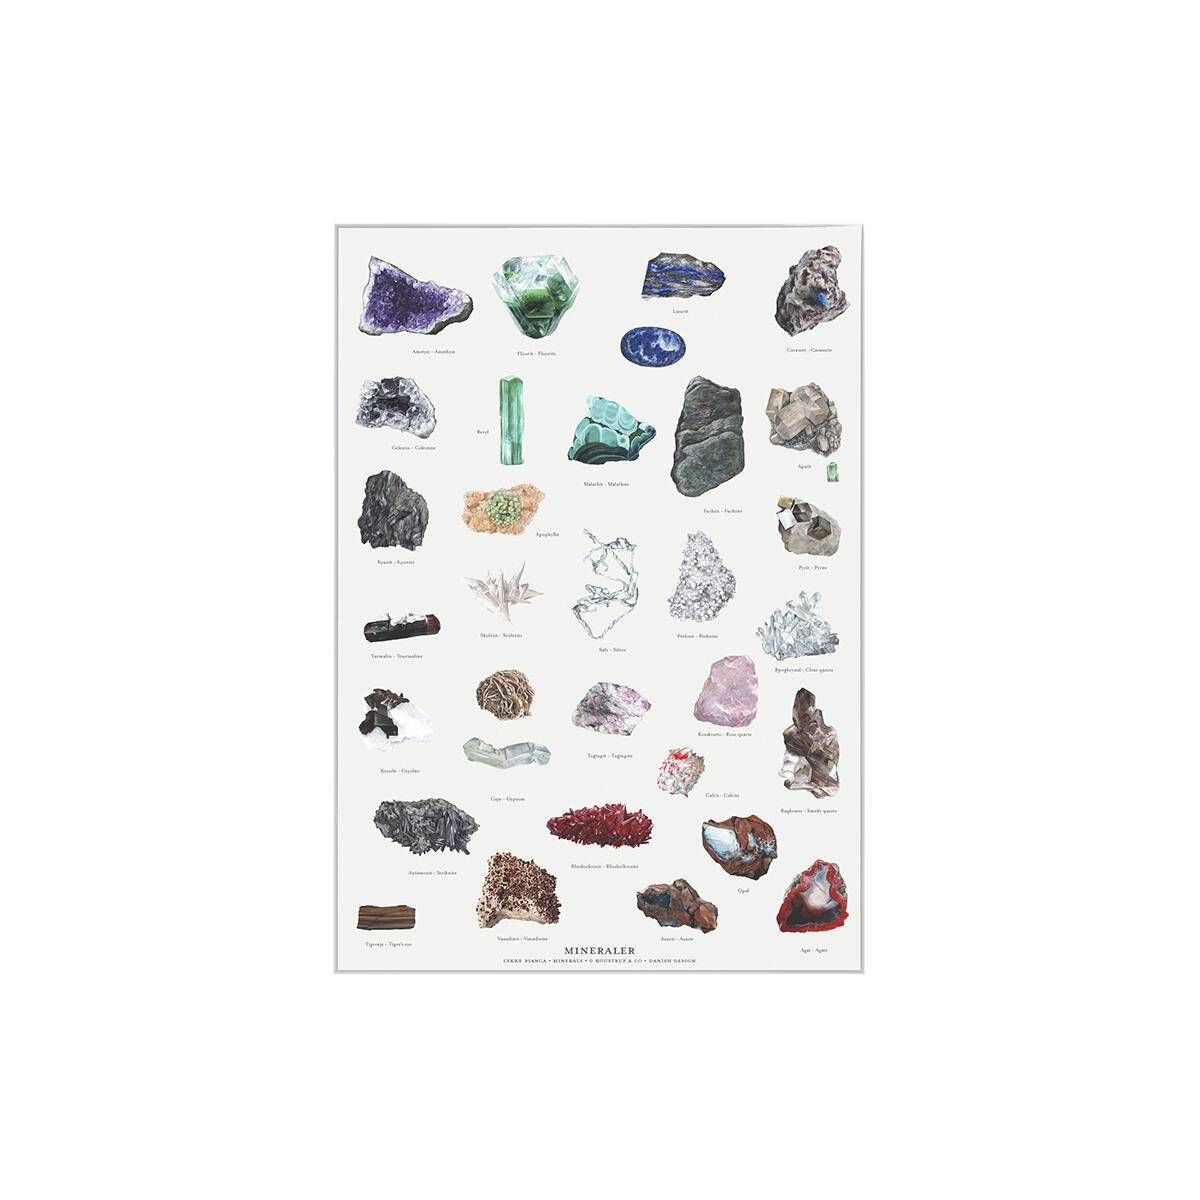 A4 plakat med 31 mineraler